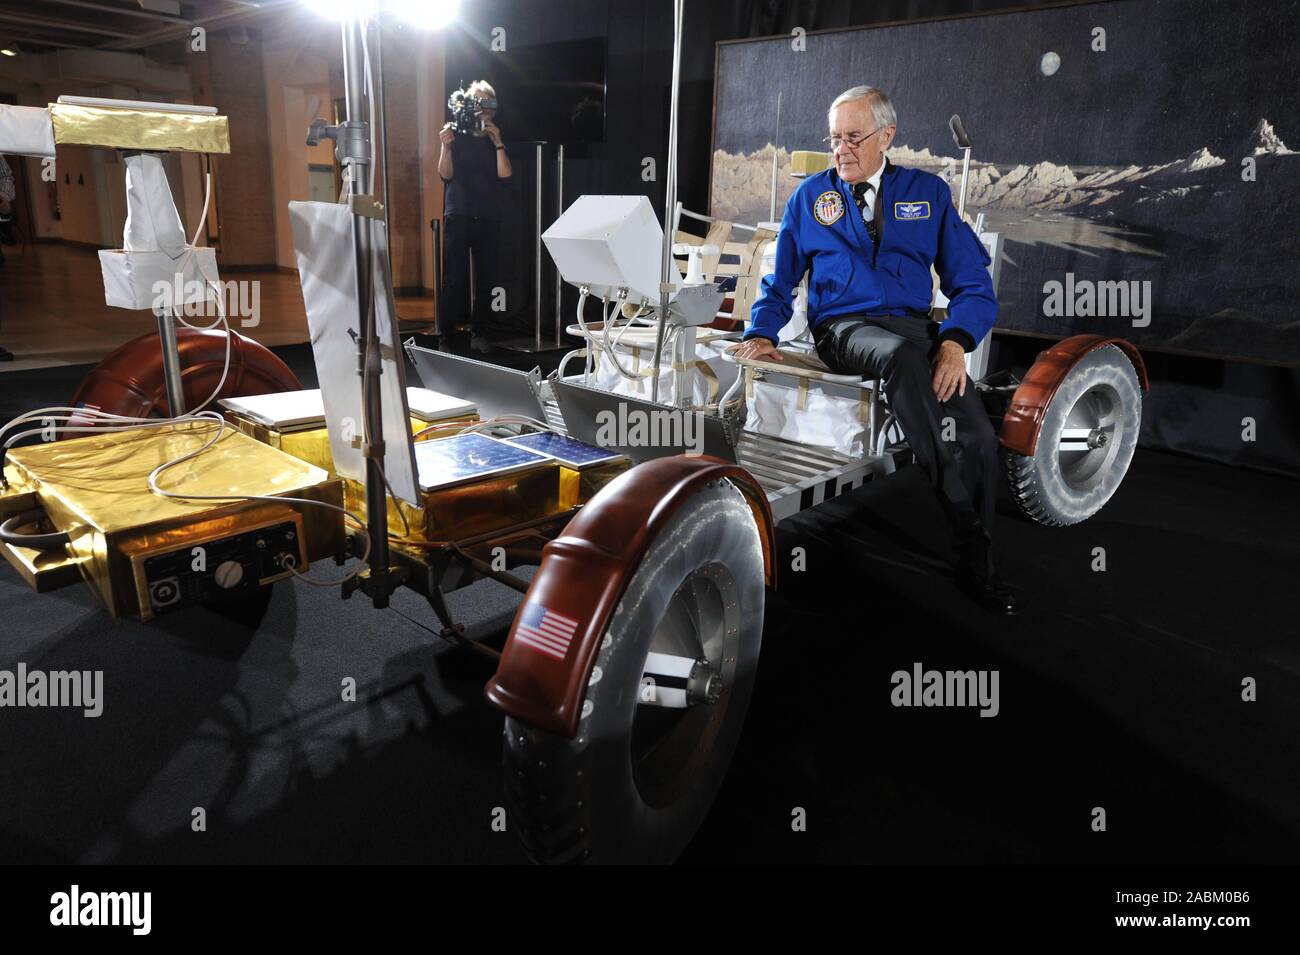 Der US-Astronaut Charles 'Charlie' Moss Herzog spricht über seine Erfahrungen im Weltraum im Deutschen Museum. Herzog pilotiert die Mondlandefähre der Apollo 16 Mission 1972 und fuhr über den Mond mit dem Auto nach der Landung. Das Bild zeigt die jüngste Moonwalker mit einer Replik eines Rover. [Automatisierte Übersetzung] Stockfoto